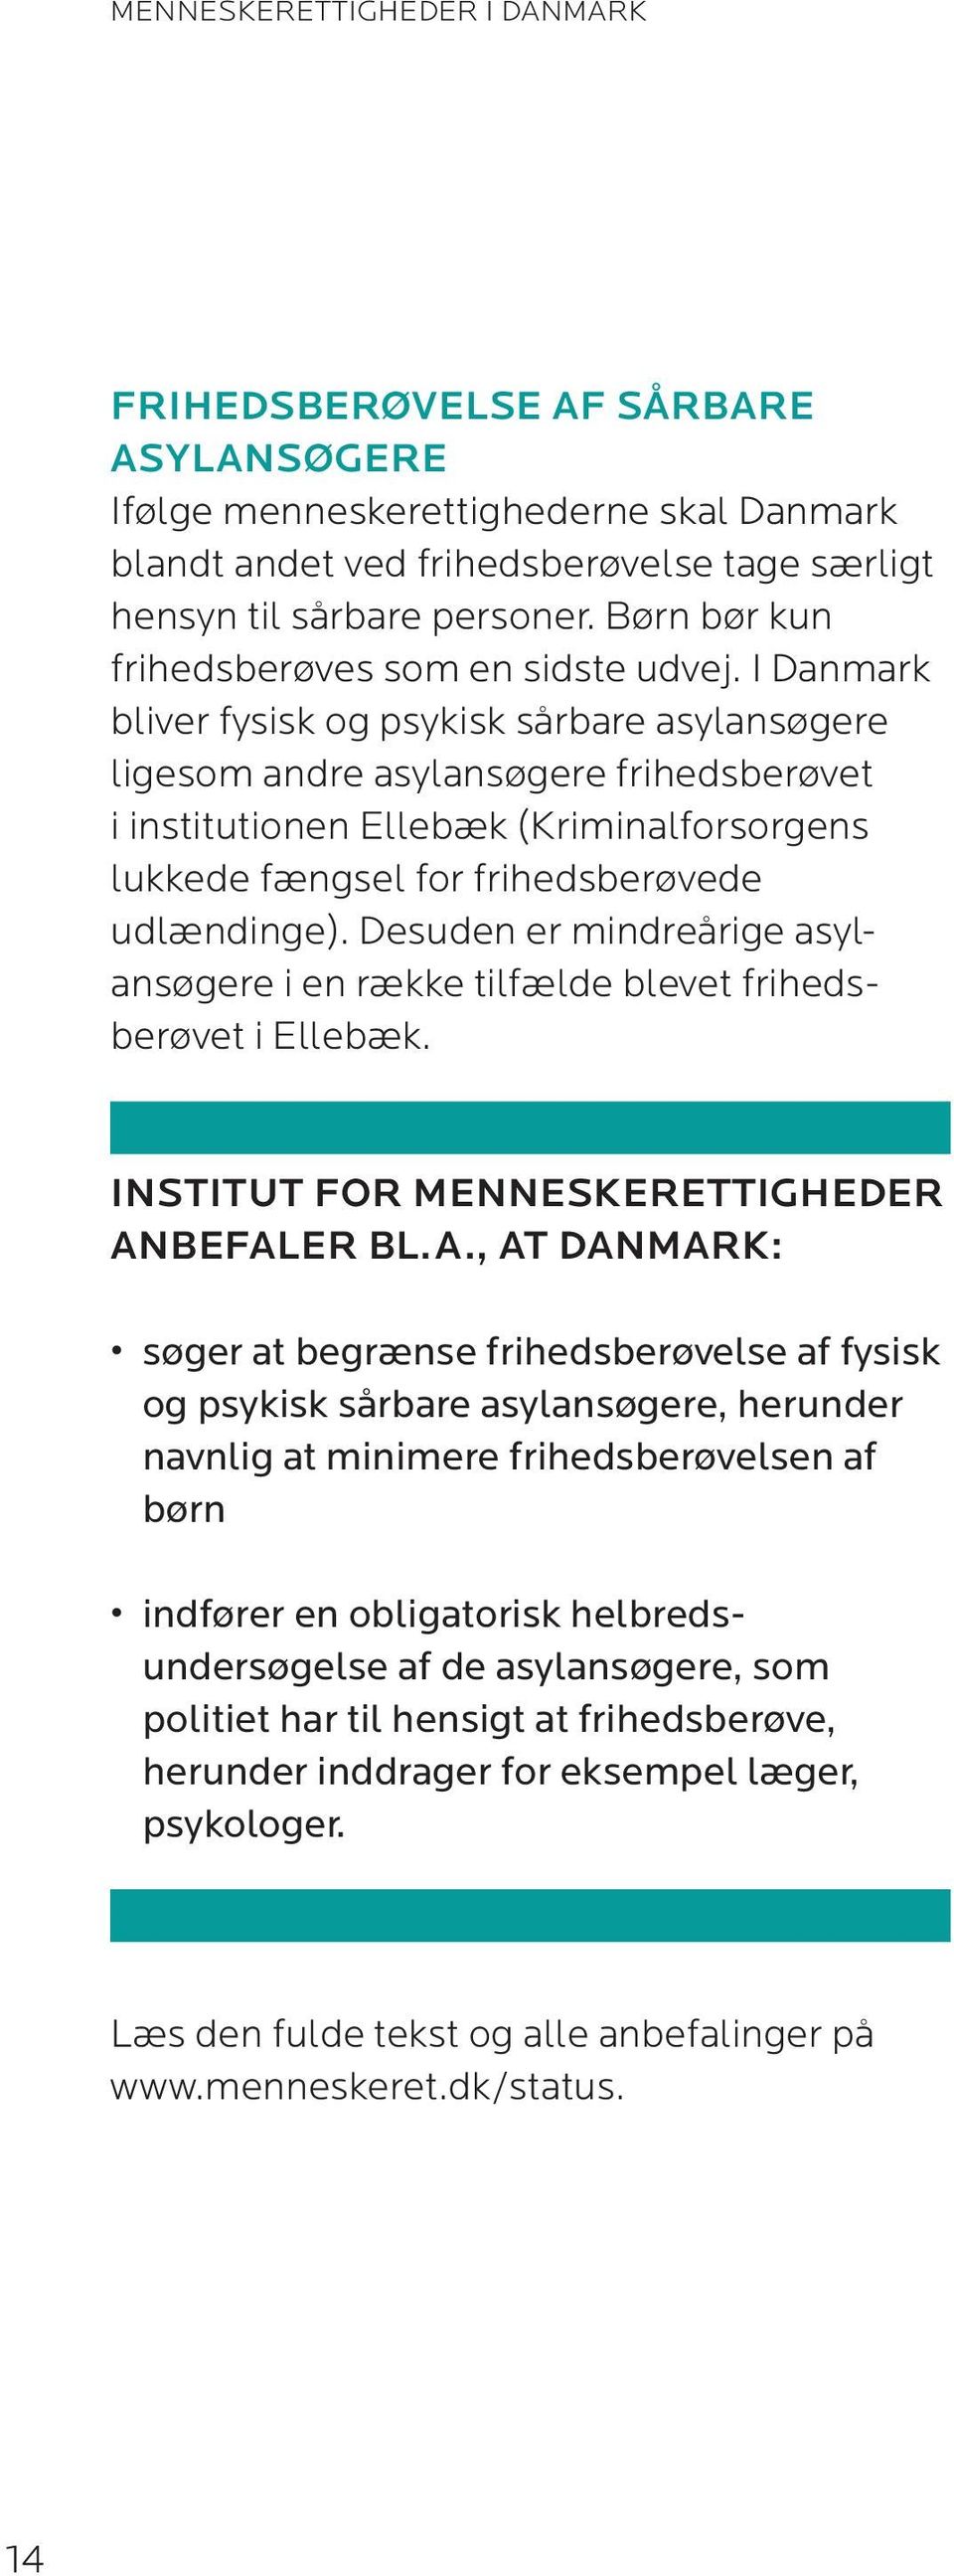 I Danmark bliver fysisk og psykisk sårbare asylansøgere ligesom andre asylansøgere frihedsberøvet i institutionen Ellebæk (Kriminalforsorgens lukkede fængsel for frihedsberøvede udlændinge).